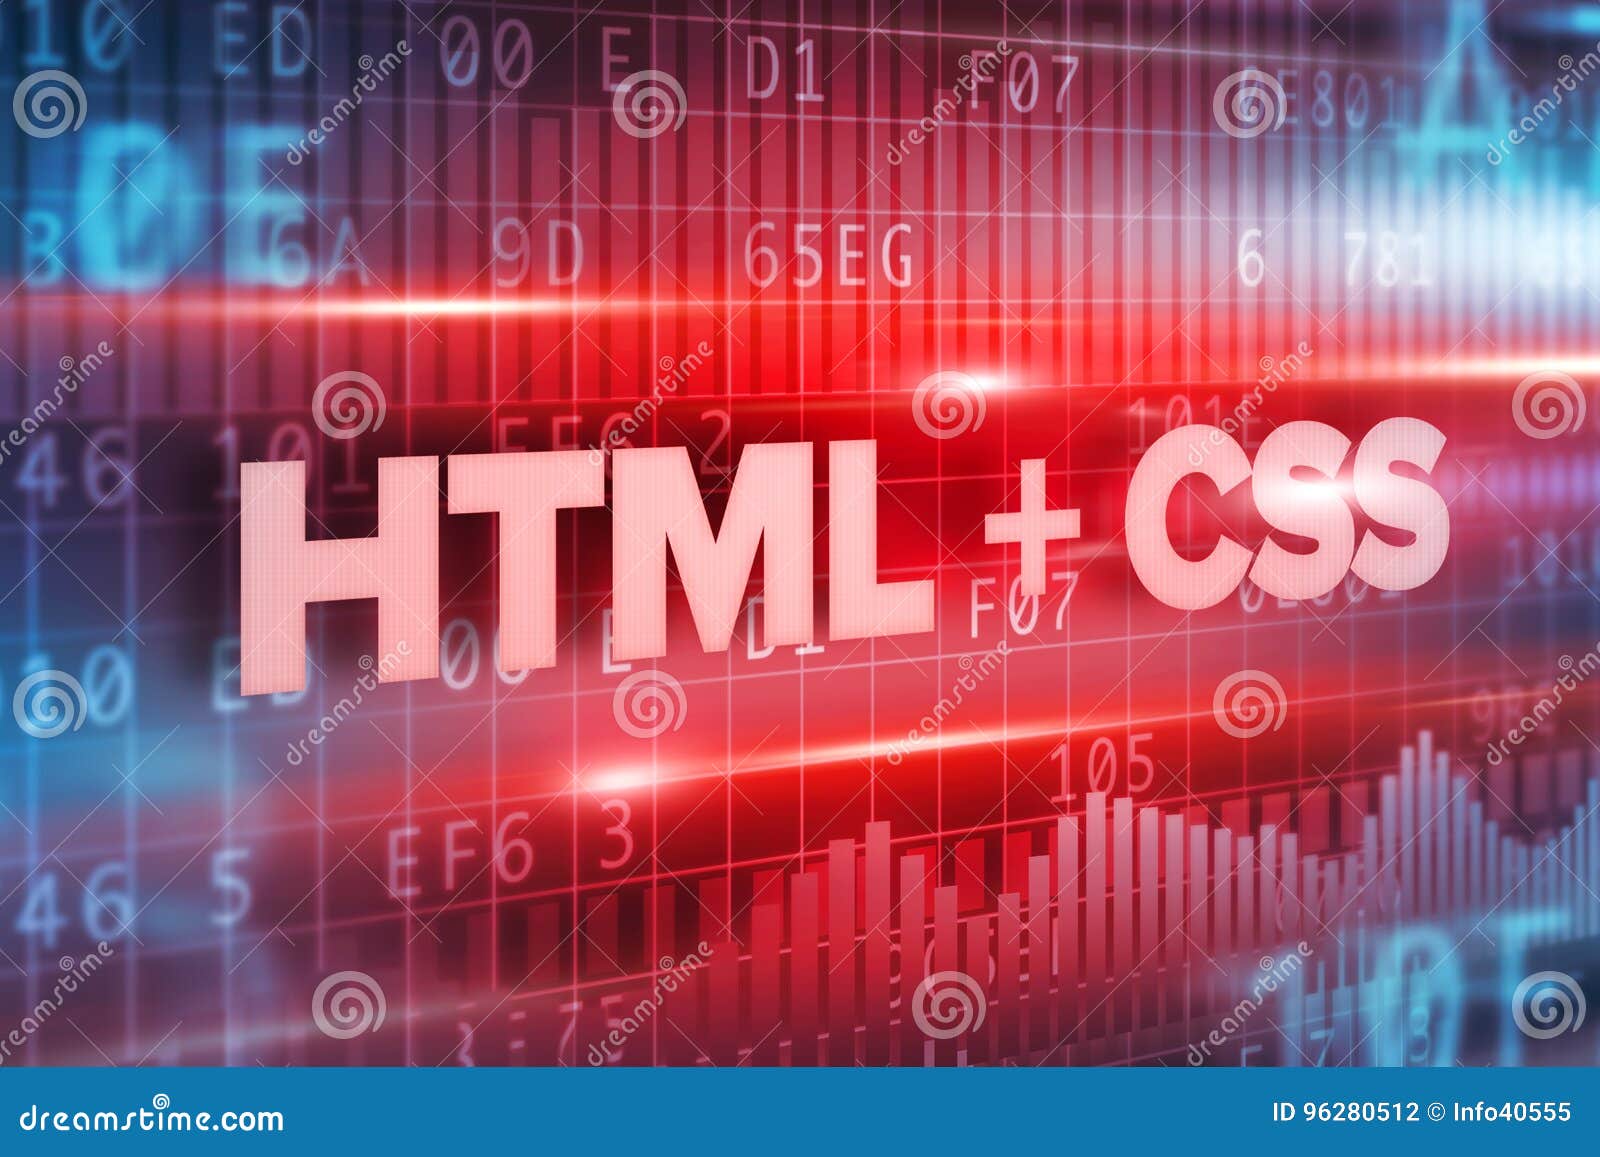 HTML và CSS – hai khái niệm trừu tượng, nhưng lại rất quan trọng đối với thiết kế website. Cùng xem hình ảnh trực quan minh họa cho những ý tưởng và cách thức áp dụng những khái niệm này vào thiết kế website sẽ mang đến những trải nghiệm tuyệt vời cho khách hàng của bạn.